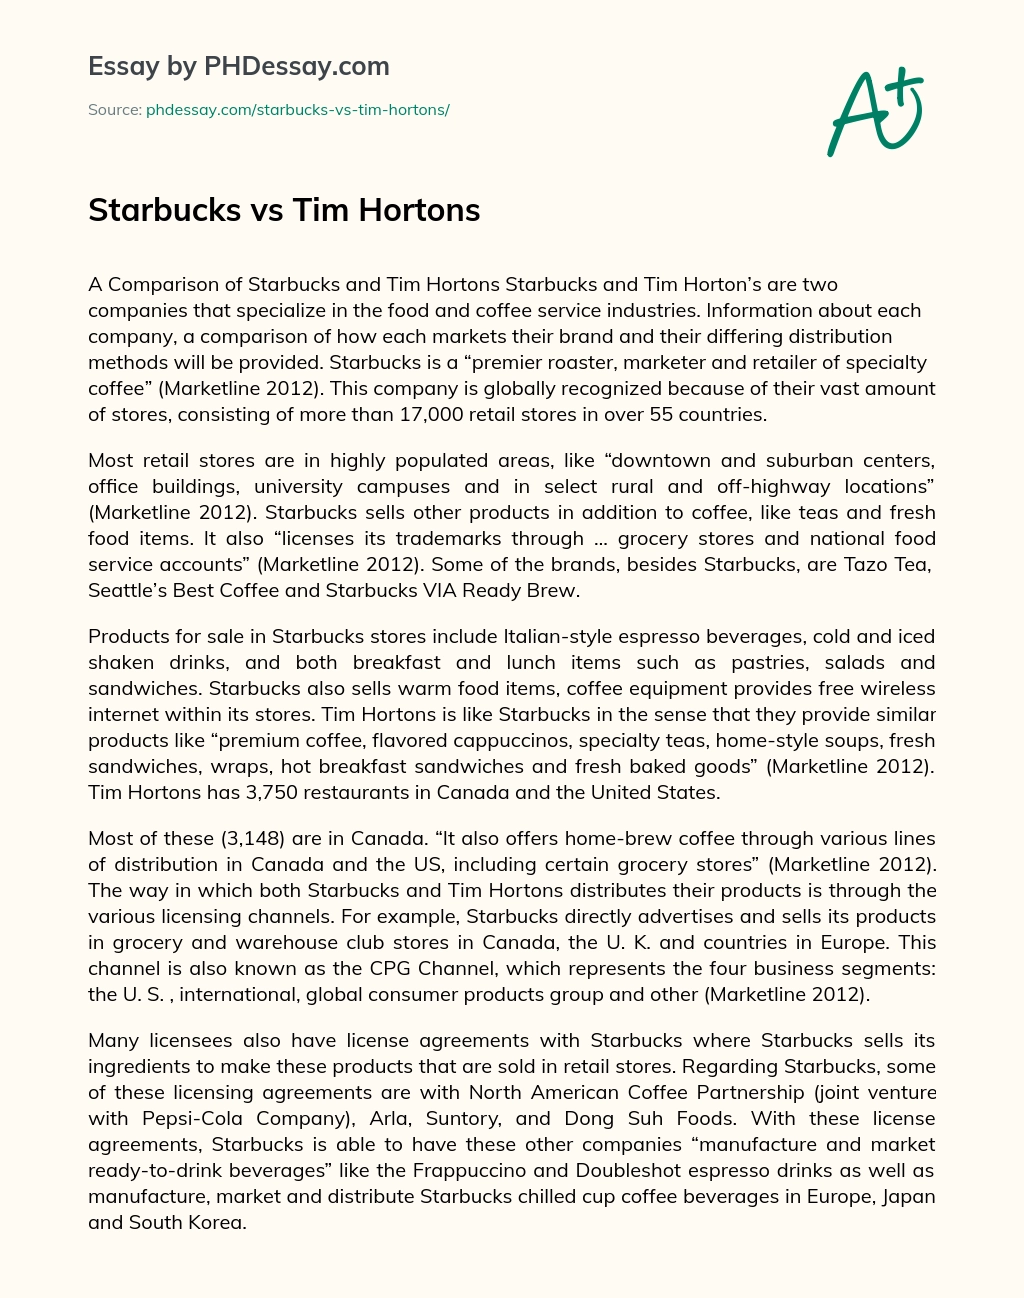 Starbucks vs Tim Hortons essay